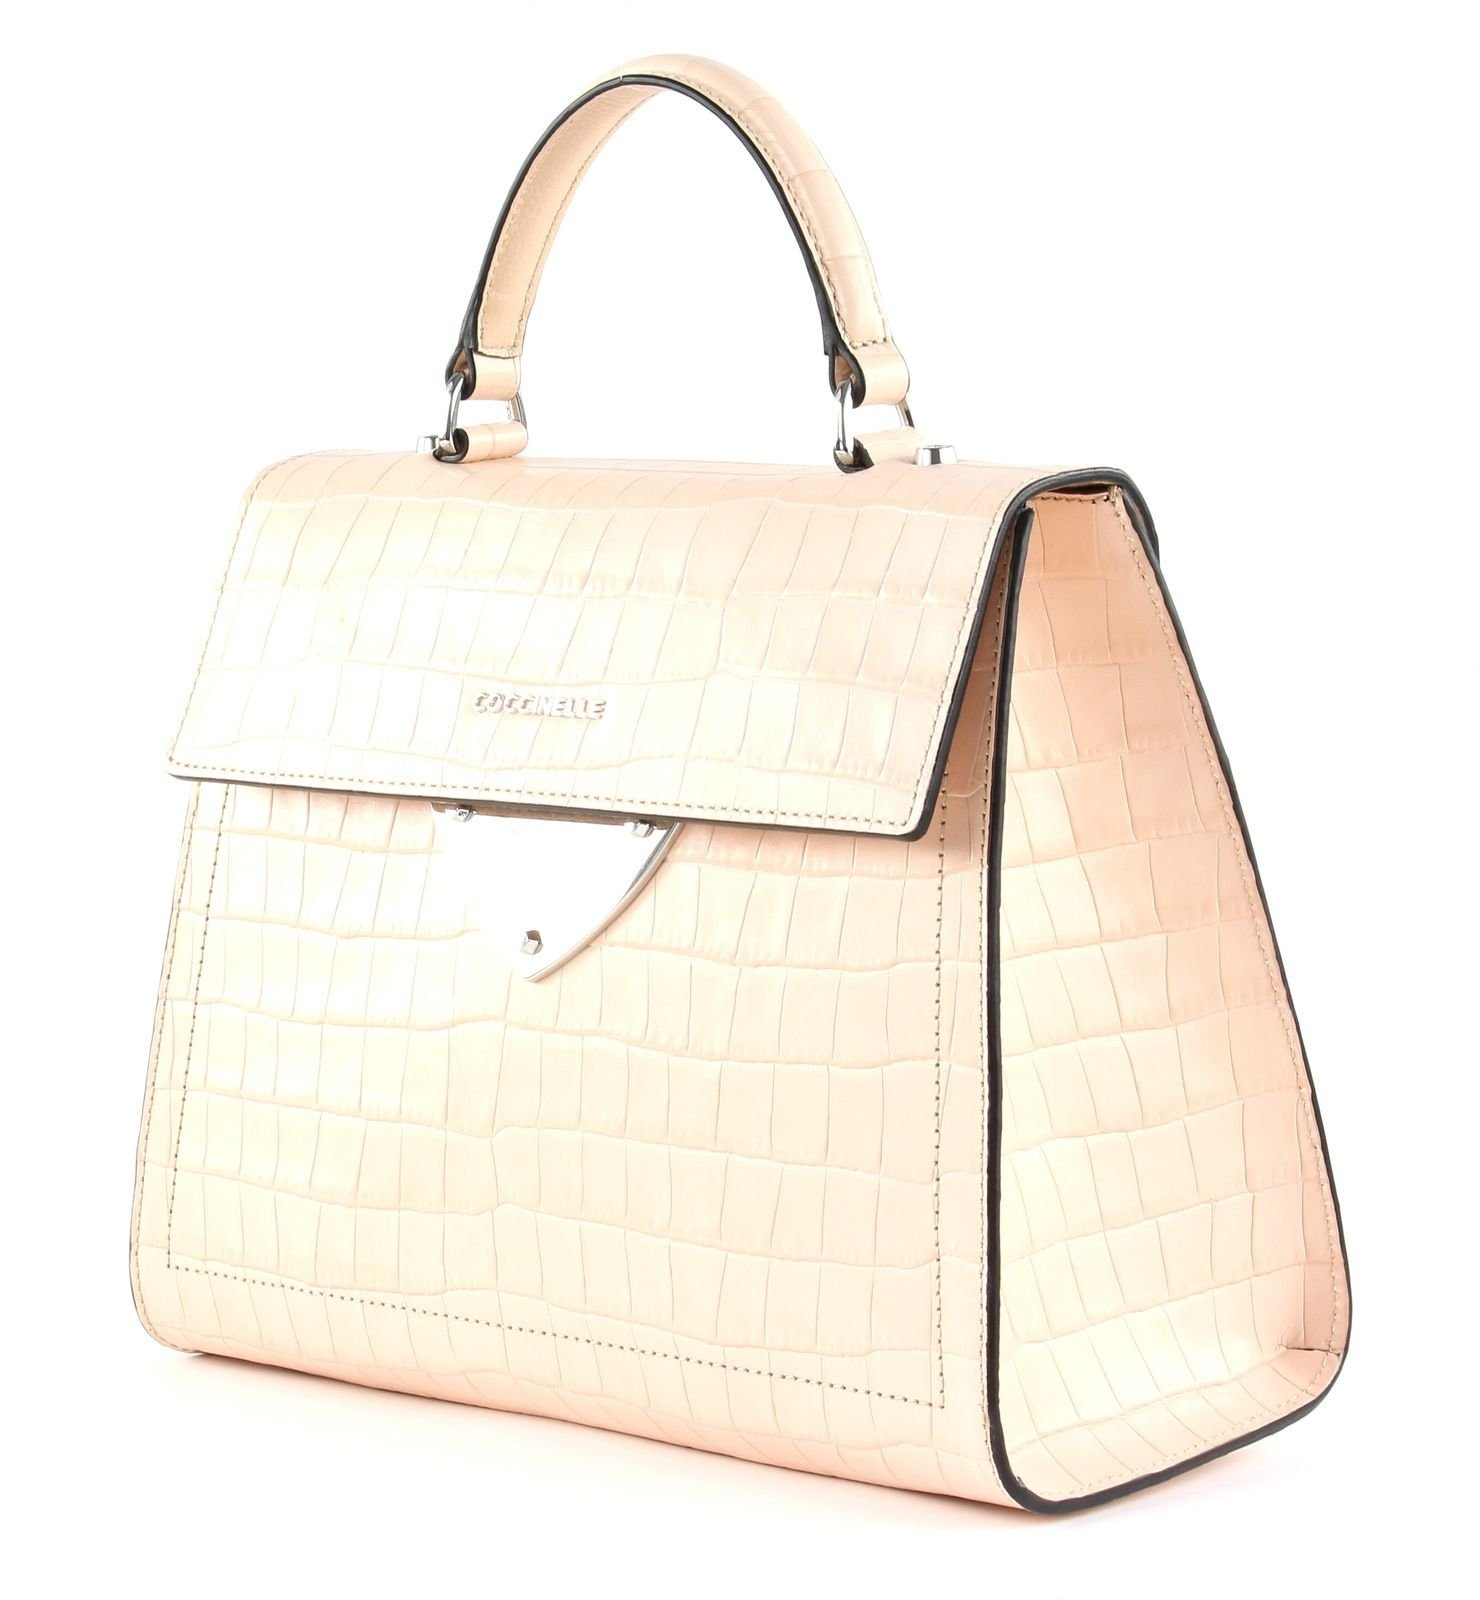 COCCINELLE Handtasche »B14 Croco« online kaufen | OTTO